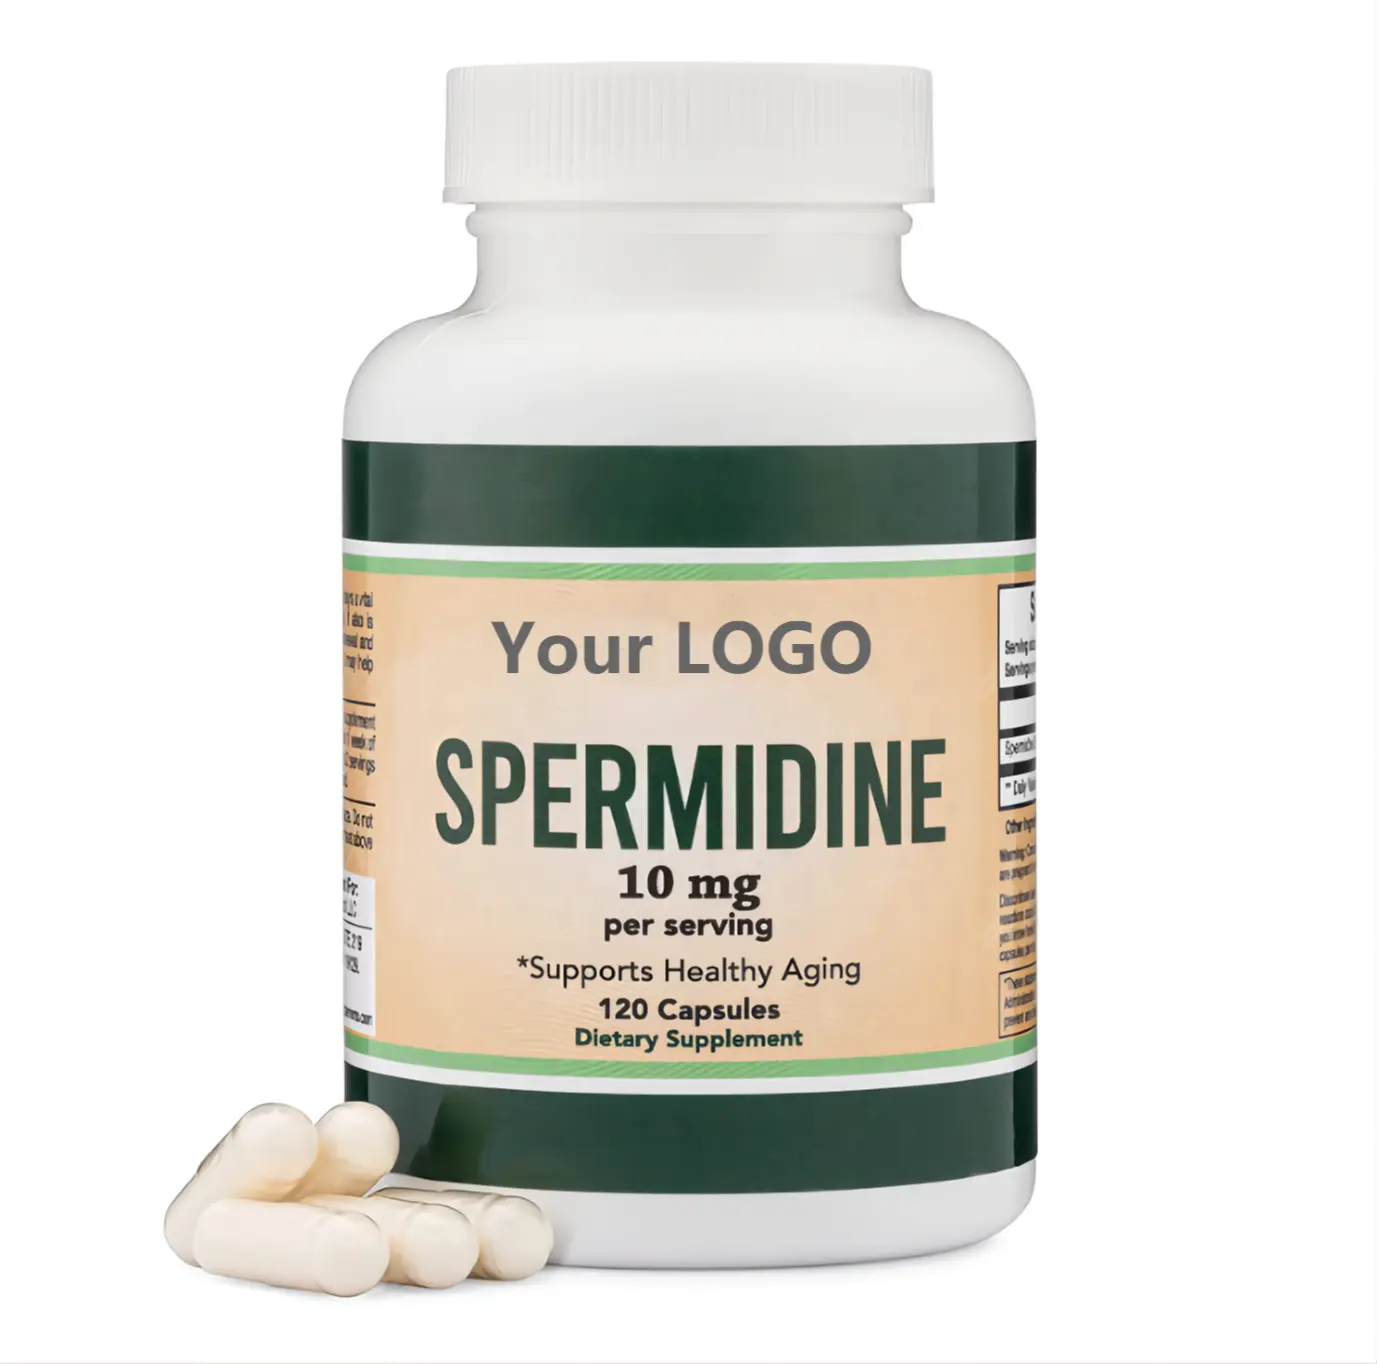 細胞膜テロメアの健康と健康的な老化のための良い価格のスペルミジンサプリメント10 mgプライベートラベルスペルミジンカプセル